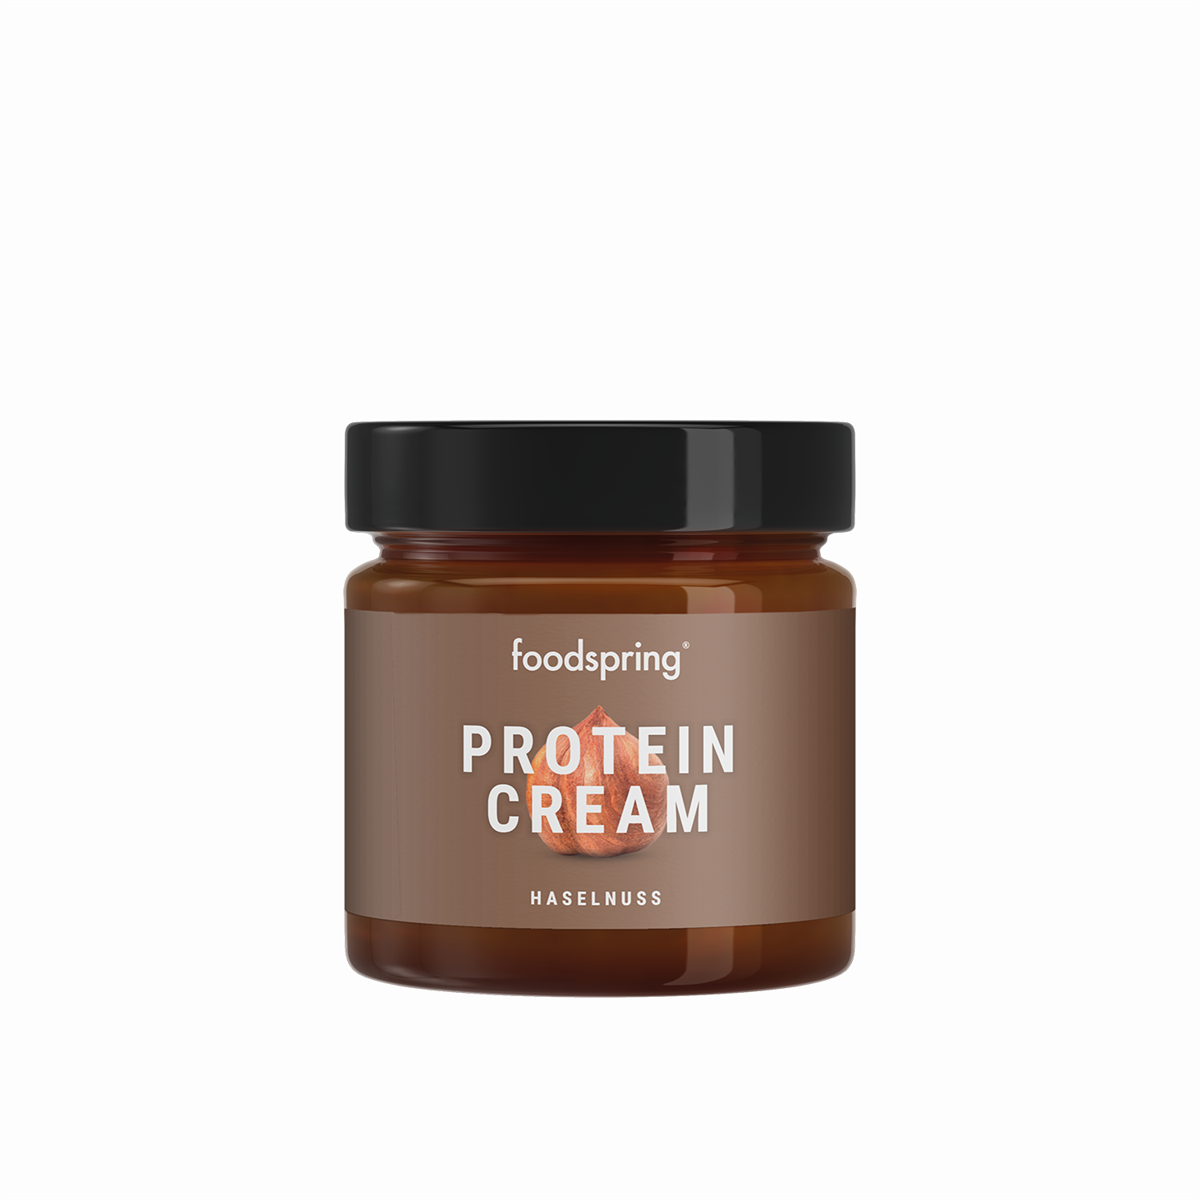 foodspring_Protein_Cream_Hazelnut_print